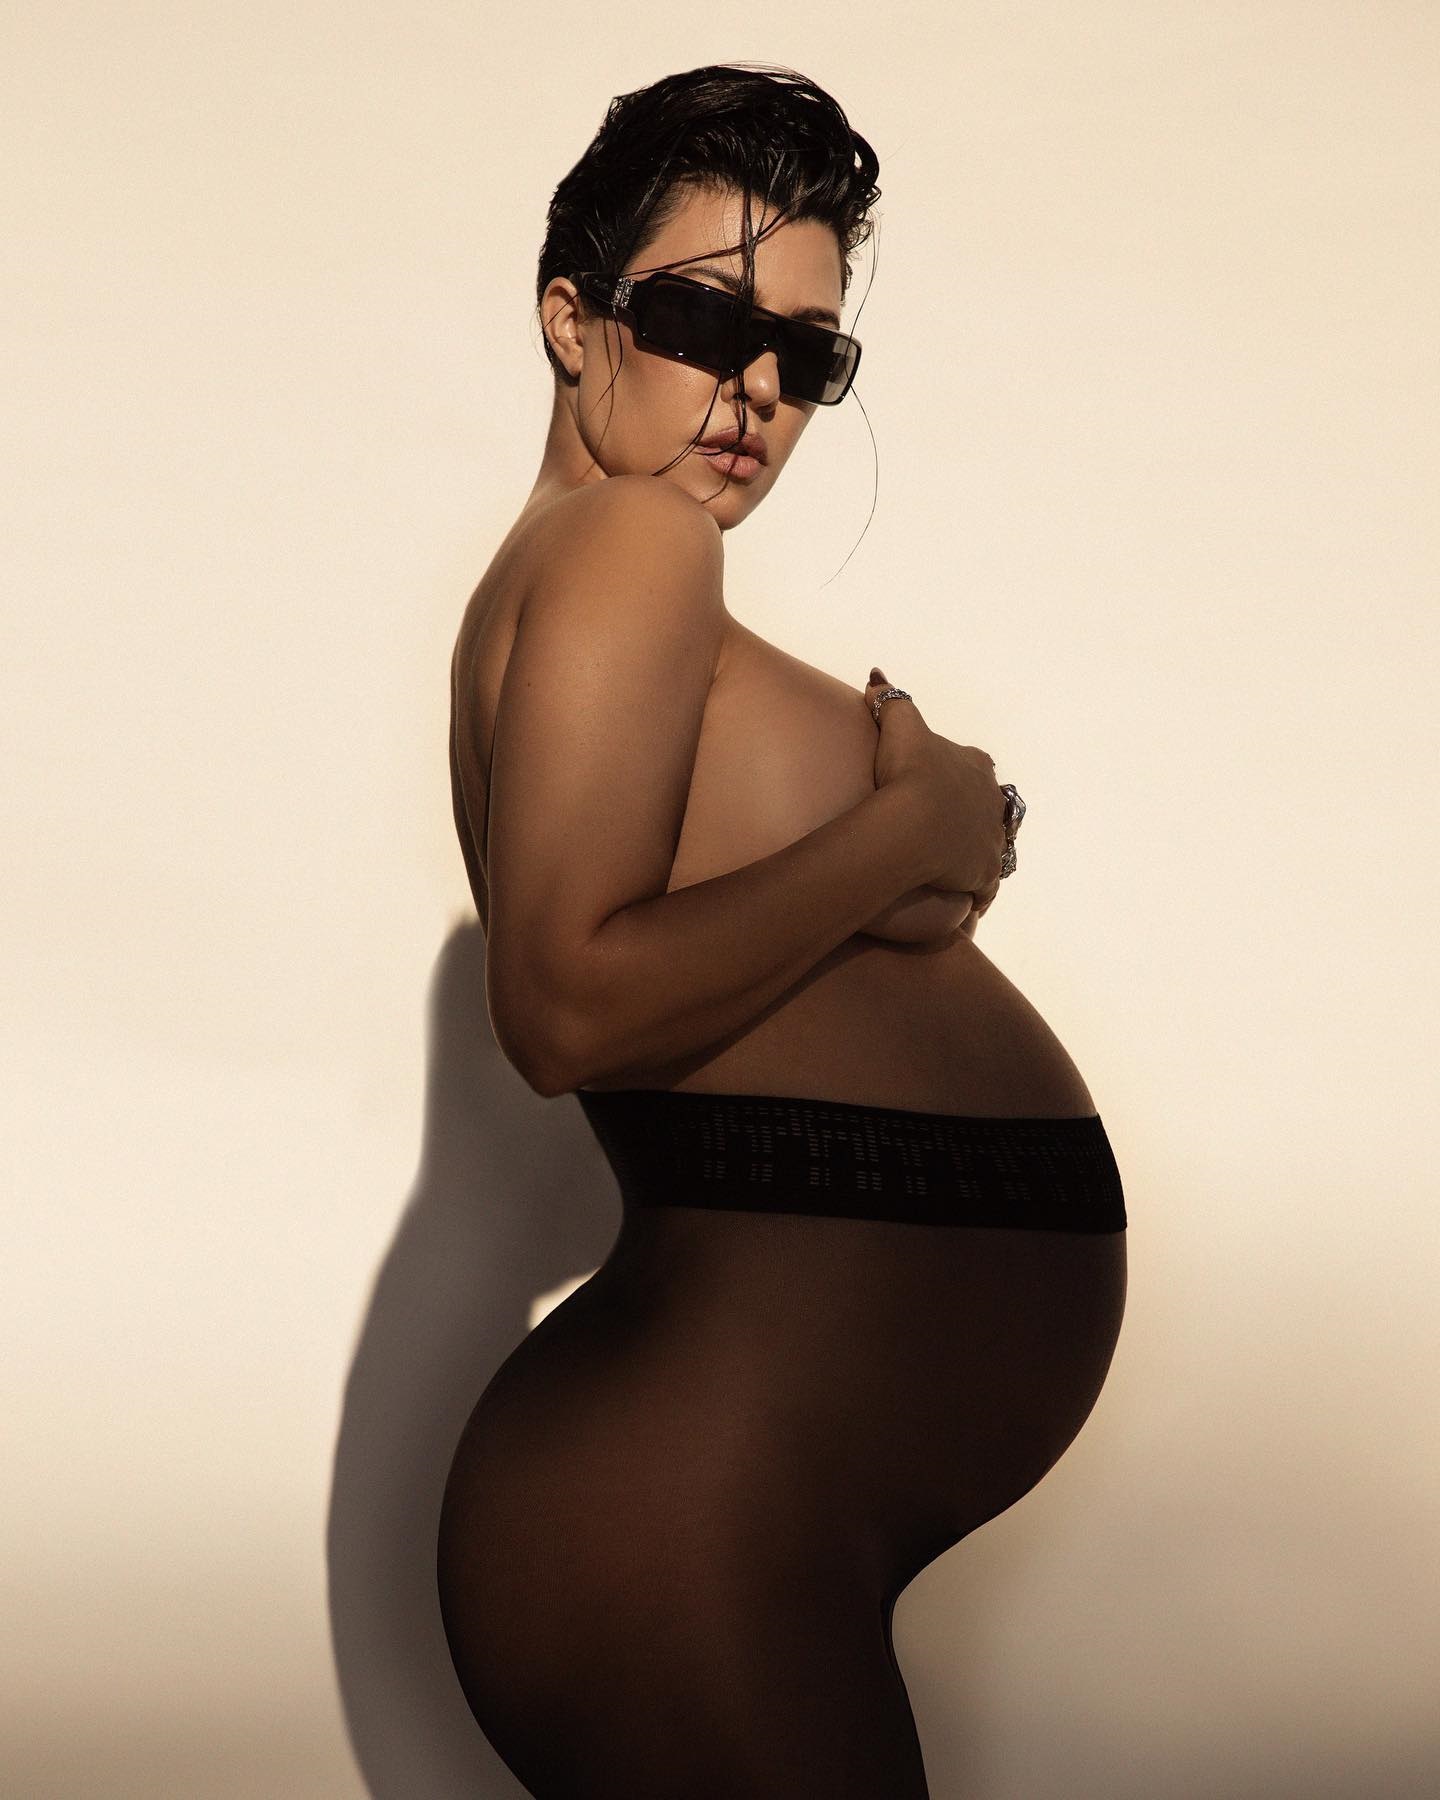 Кортни Кардашьян стала мамой в четвертый раз. Топ фото обнаженной и беременной Ким и не только